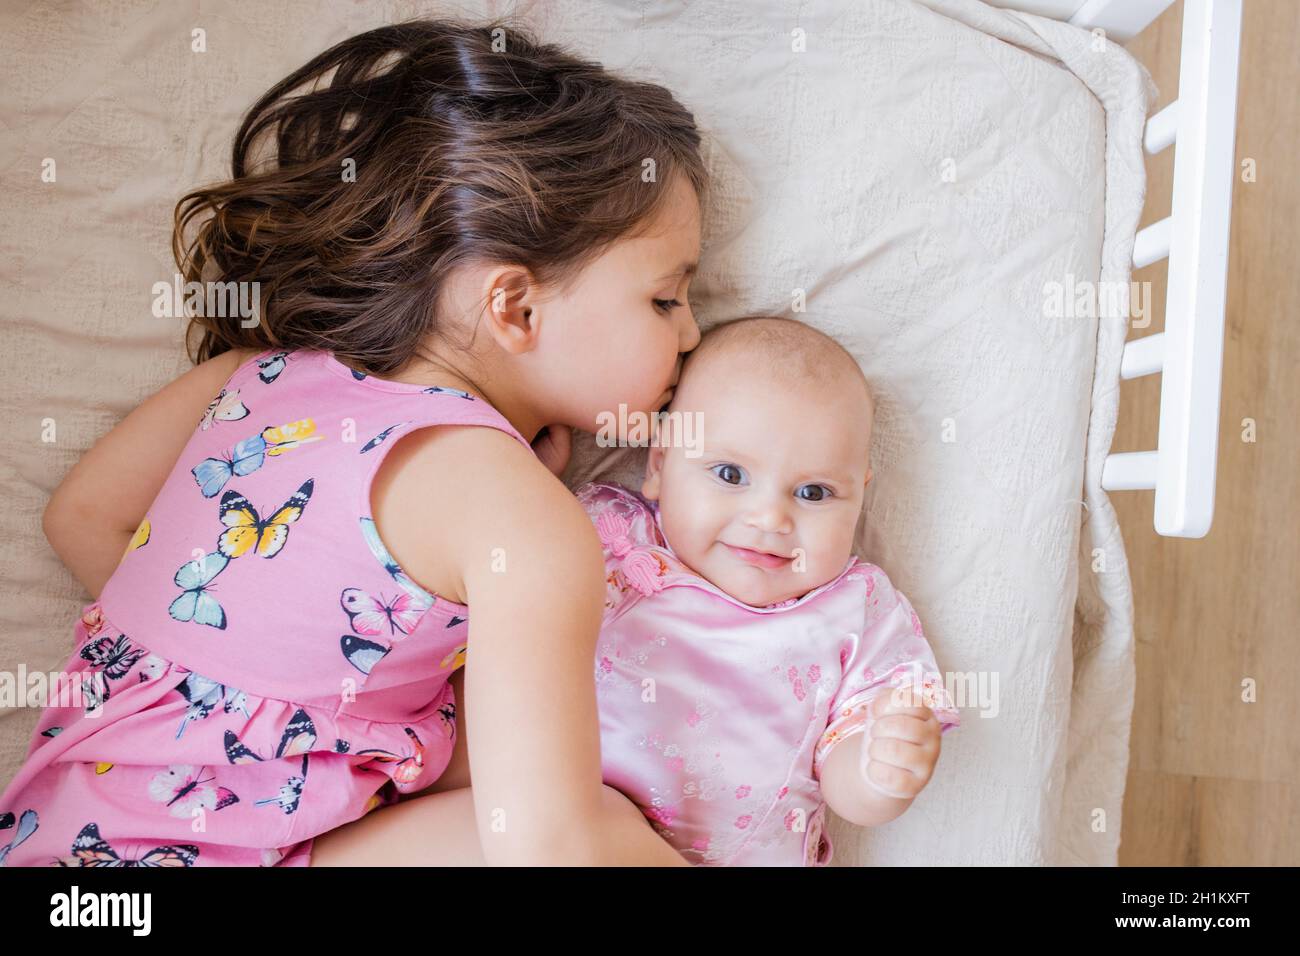 Das kleine Mädchen liegt liebevoll und friedlich auf dem Bett und umarmt und küsst ihre glückliche kleine Schwester. Niedliche Schwestern in rosa Mäntel, die auf einem Bett ruhen. Junge Sibli Stockfoto